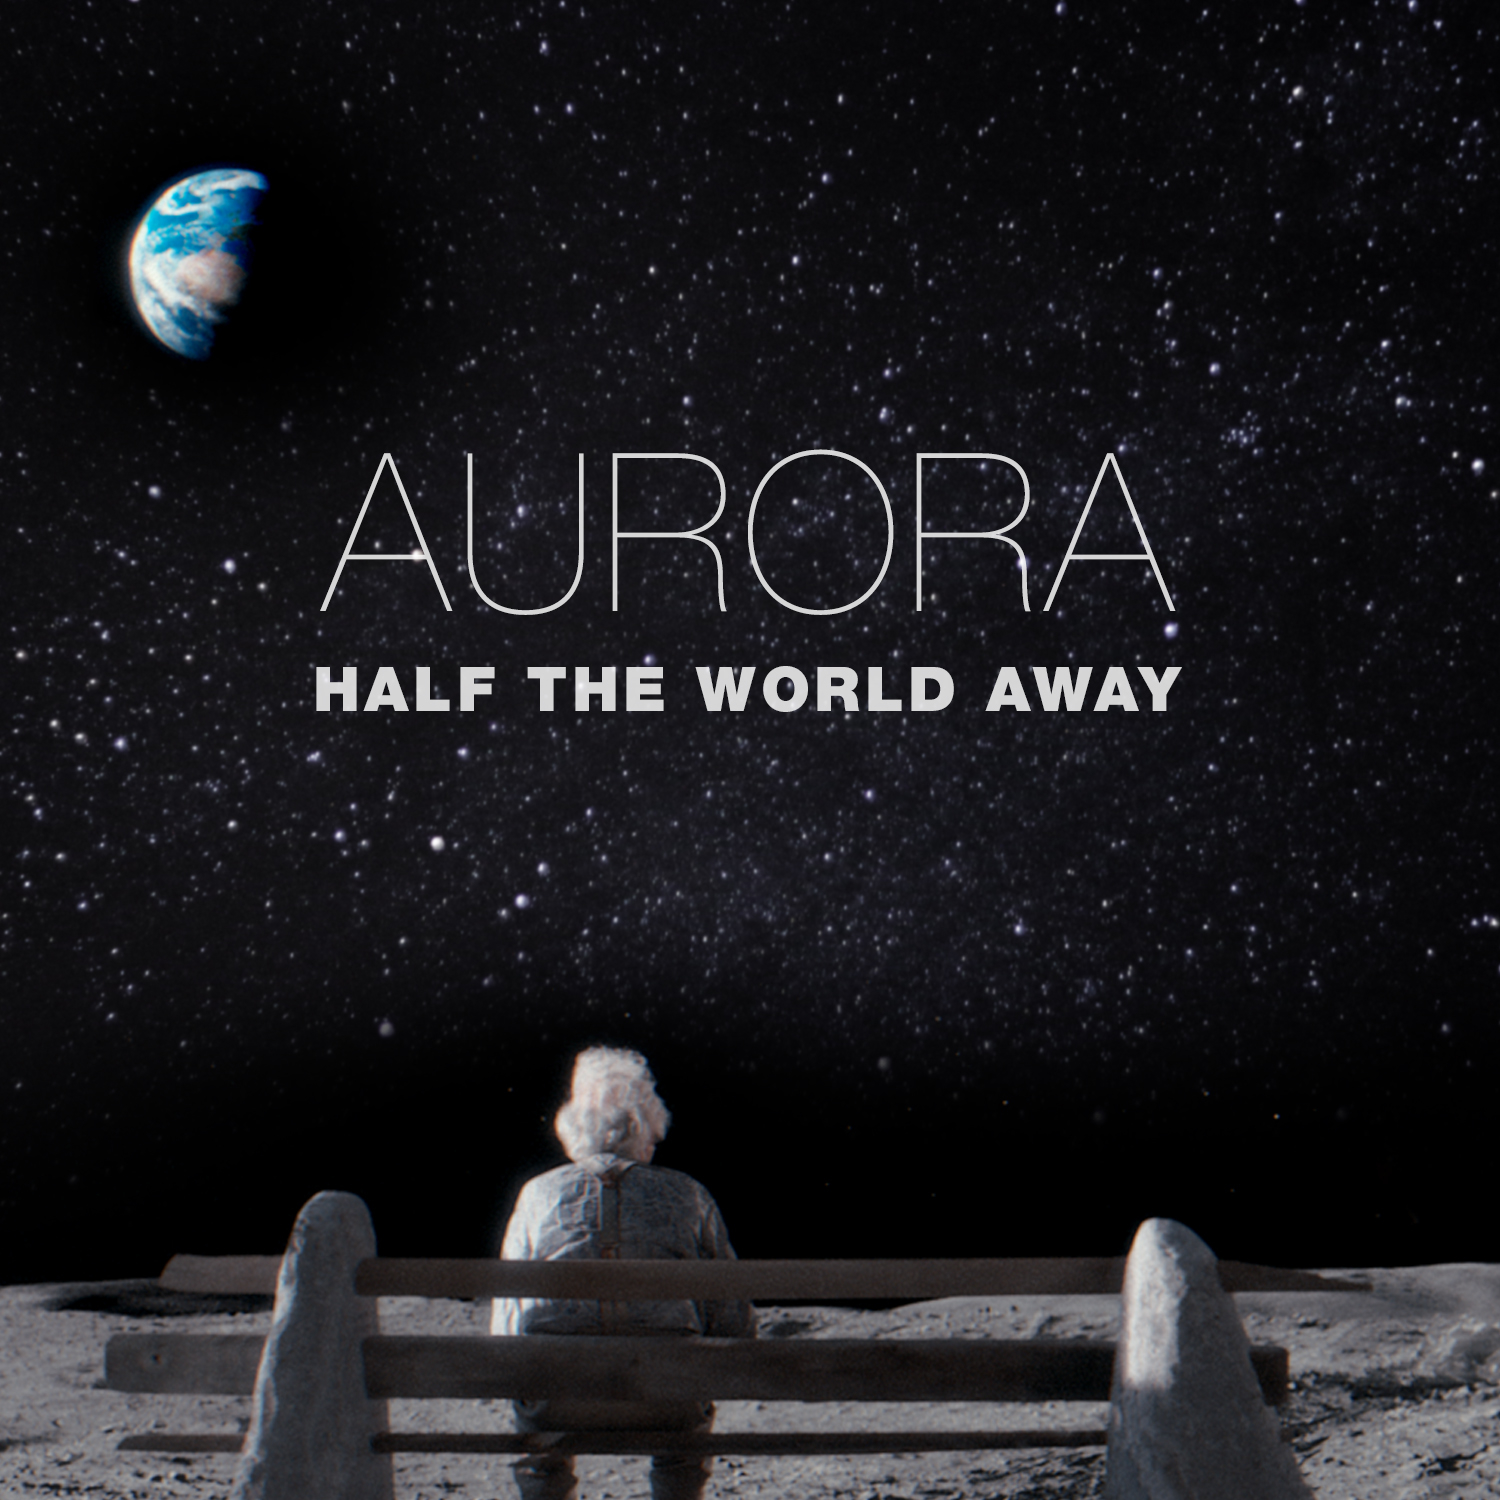 Aurora Aksnes Scarborough Fair Album Cover T-Shirt Black